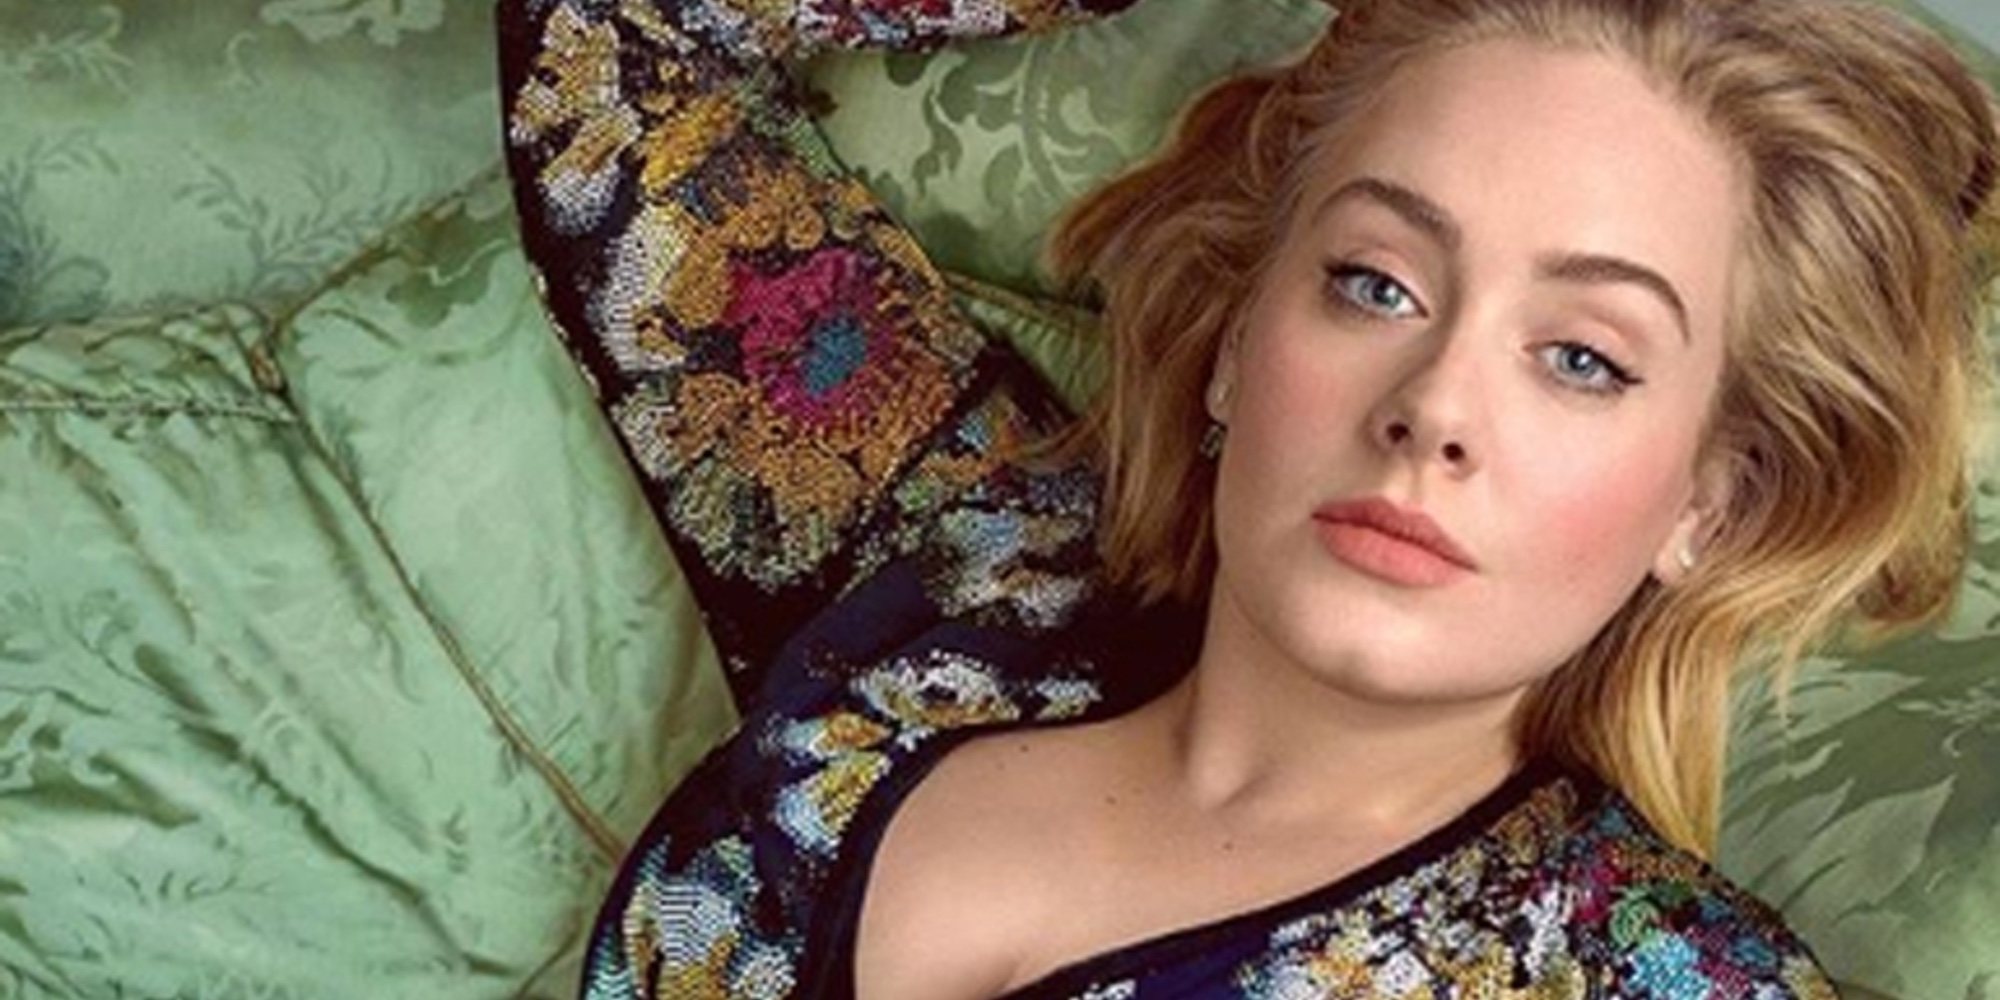 Adele no podrá cantar canciones sobre su exmarido Simon Konecki